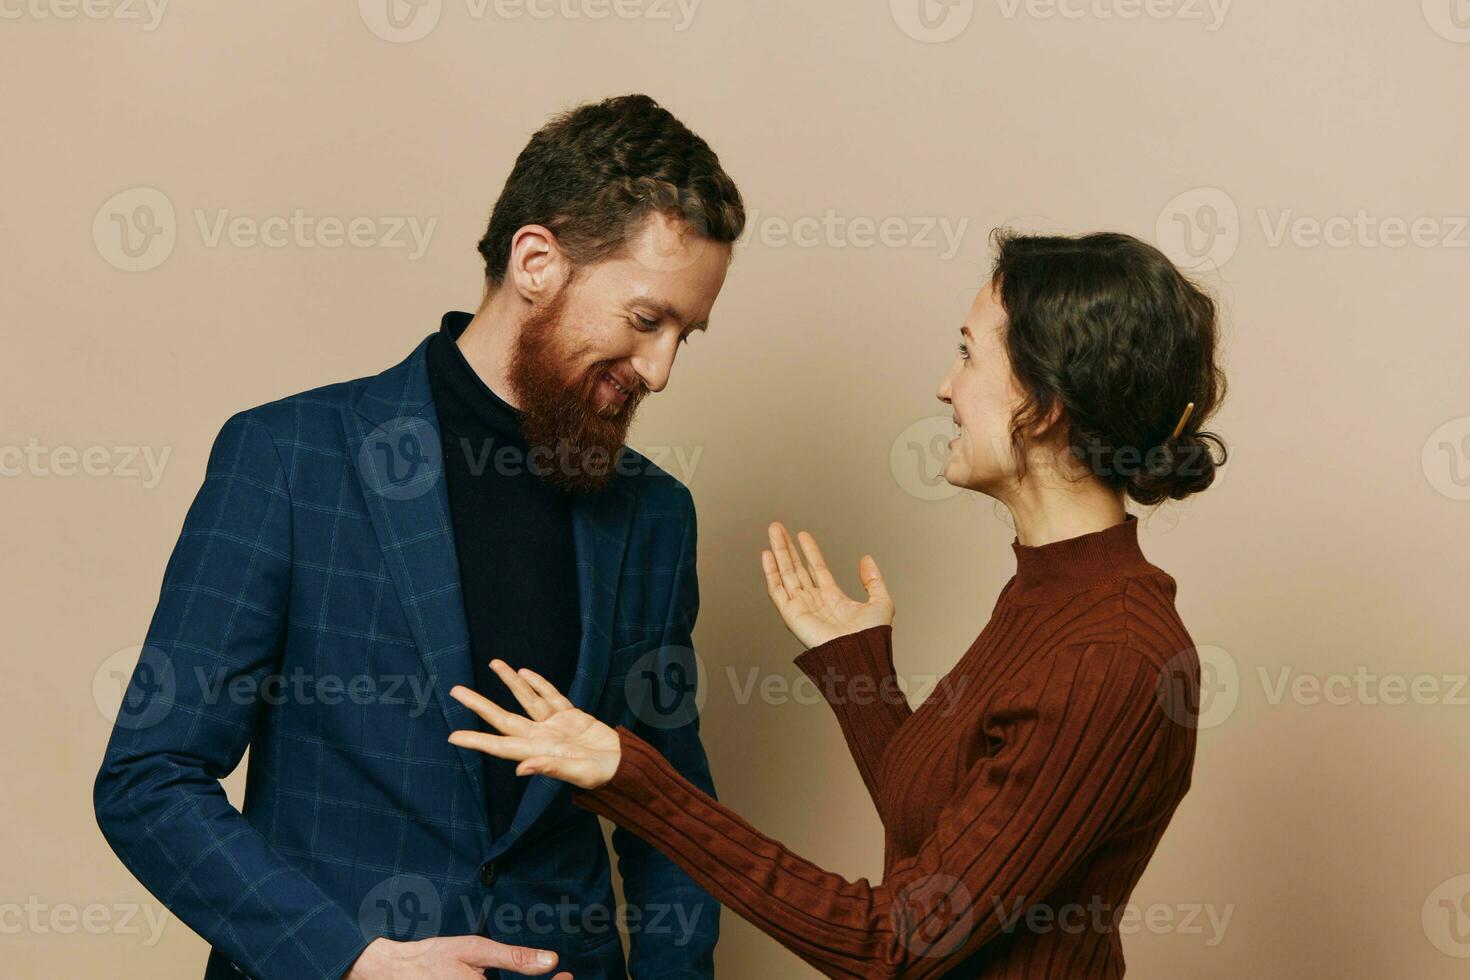 homme et femme couple dans une relation sourire et interaction sur une beige Contexte dans une réel relation entre gens photo